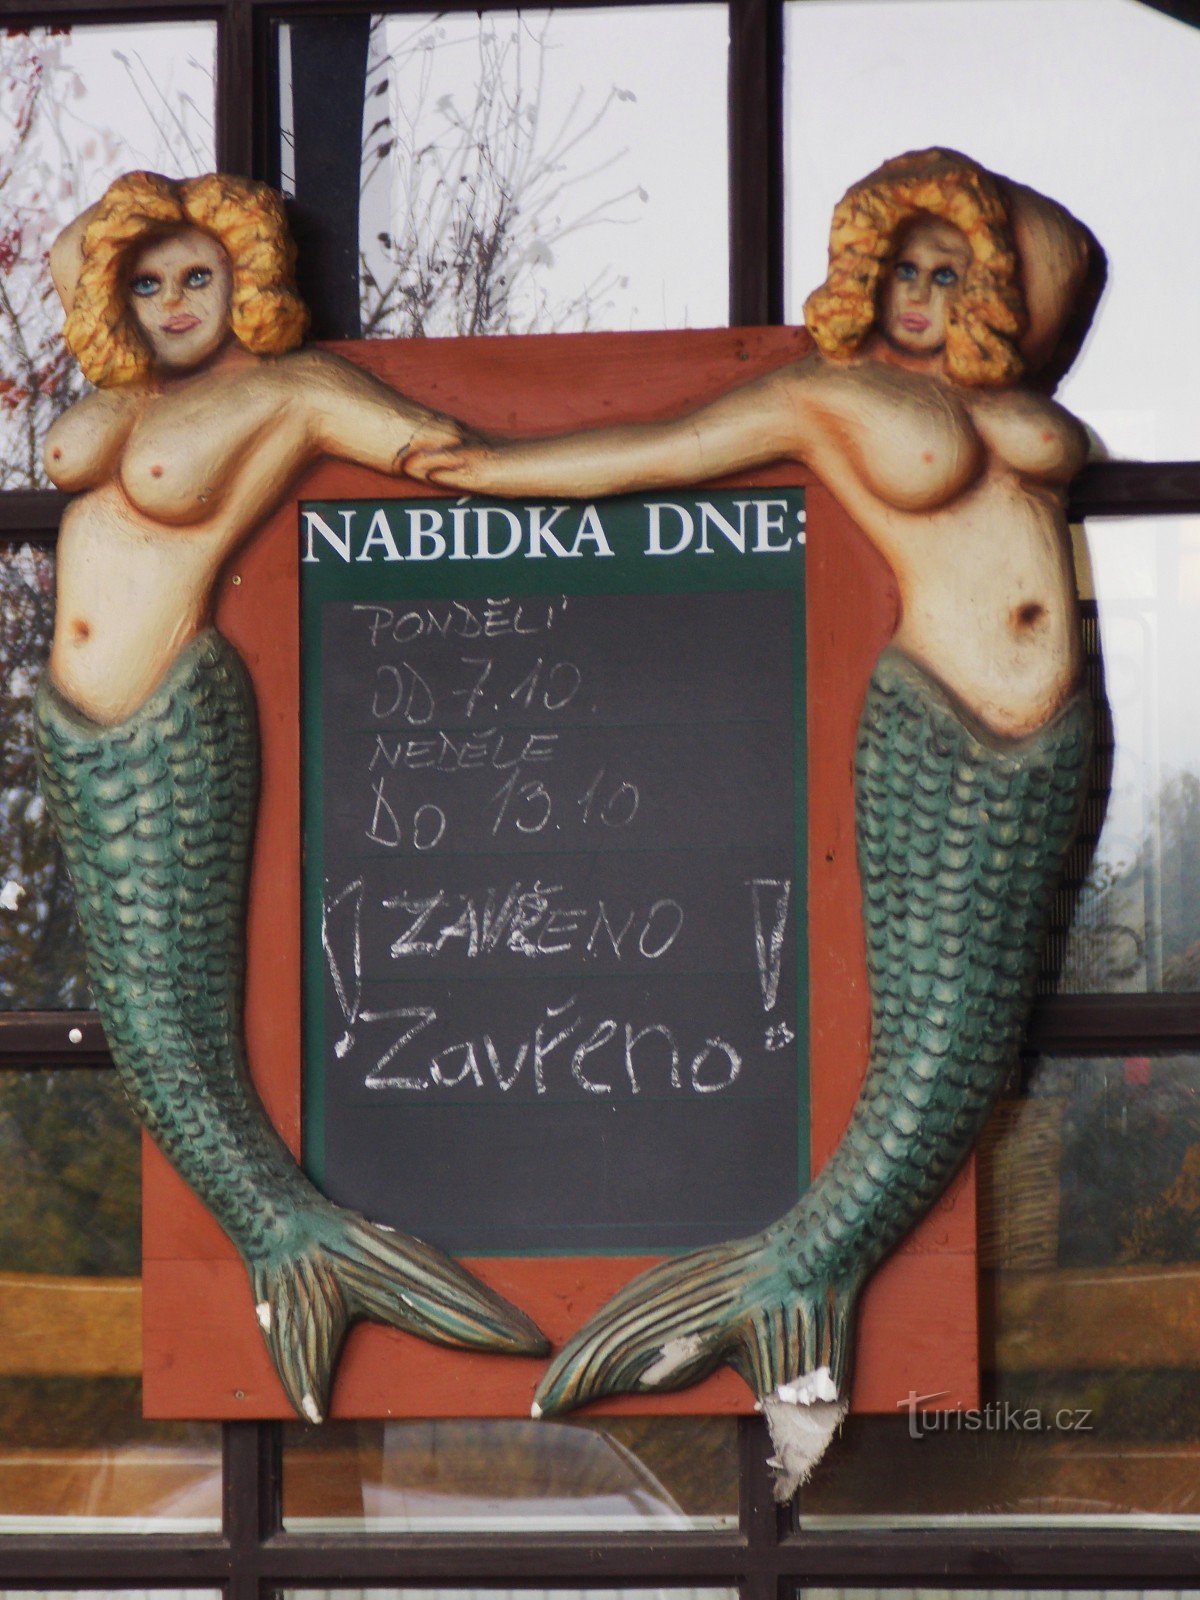 Για μια γκουρμέ εμπειρία, πηγαίνετε στο Fisherman's Bastion στη Λίπα κοντά στο Zlín